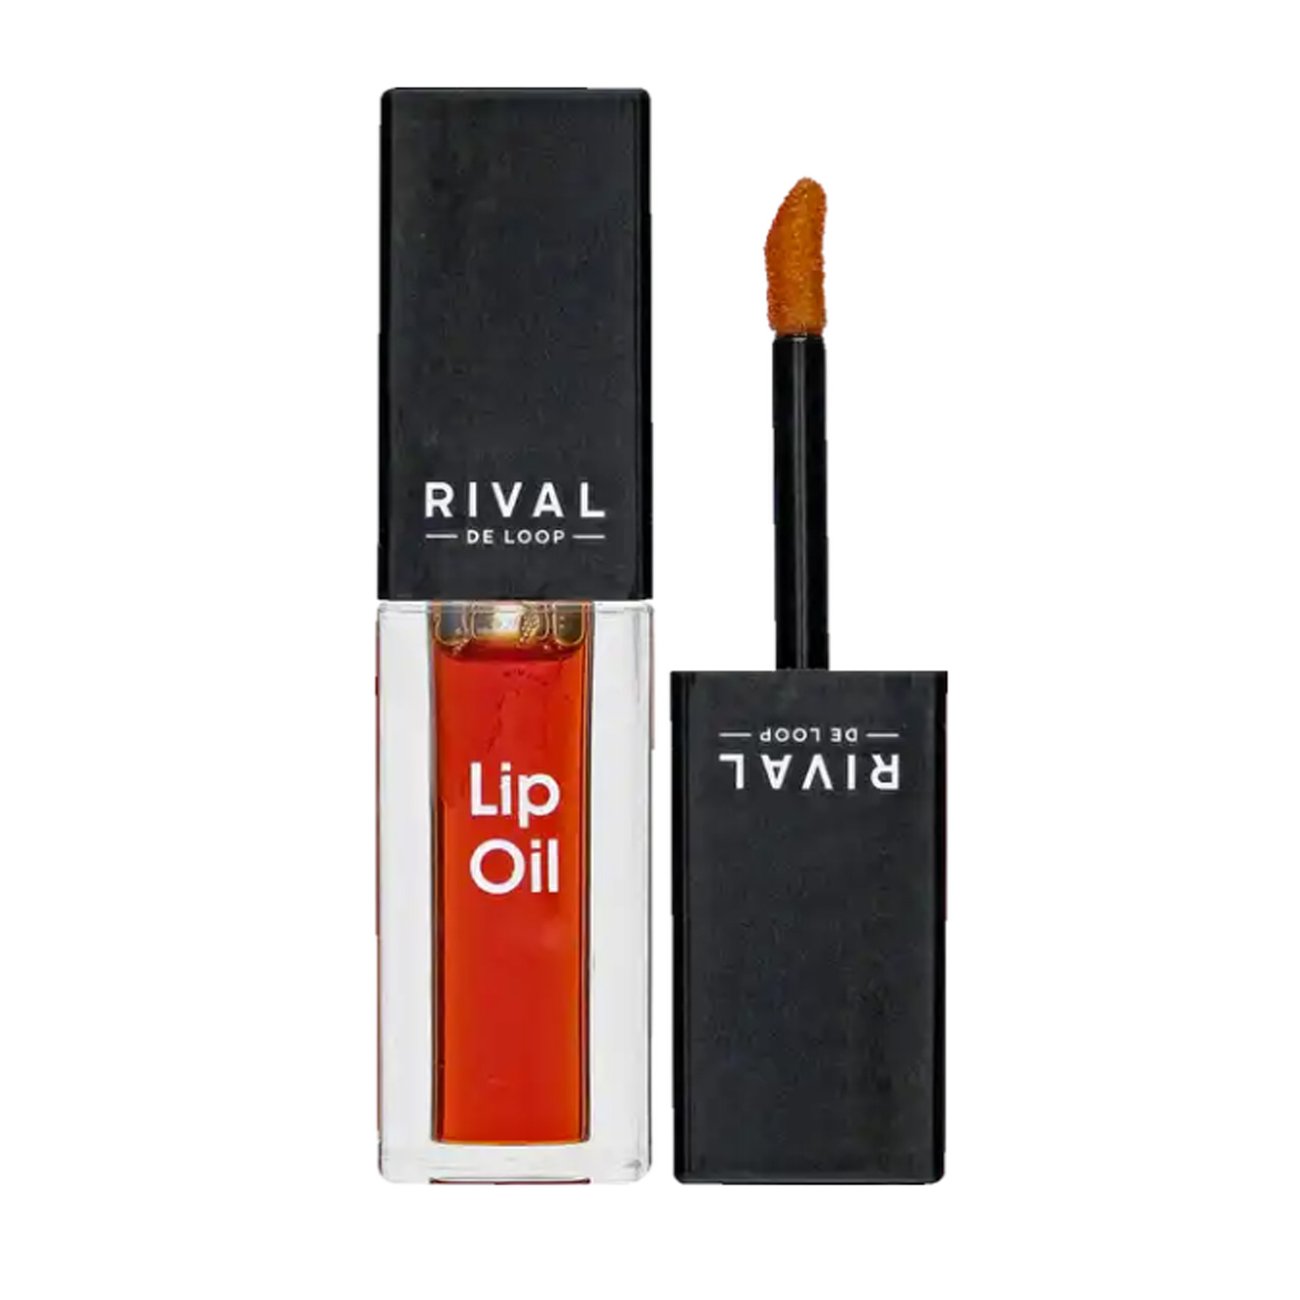 RIVAL DE LOOP Lip Oil